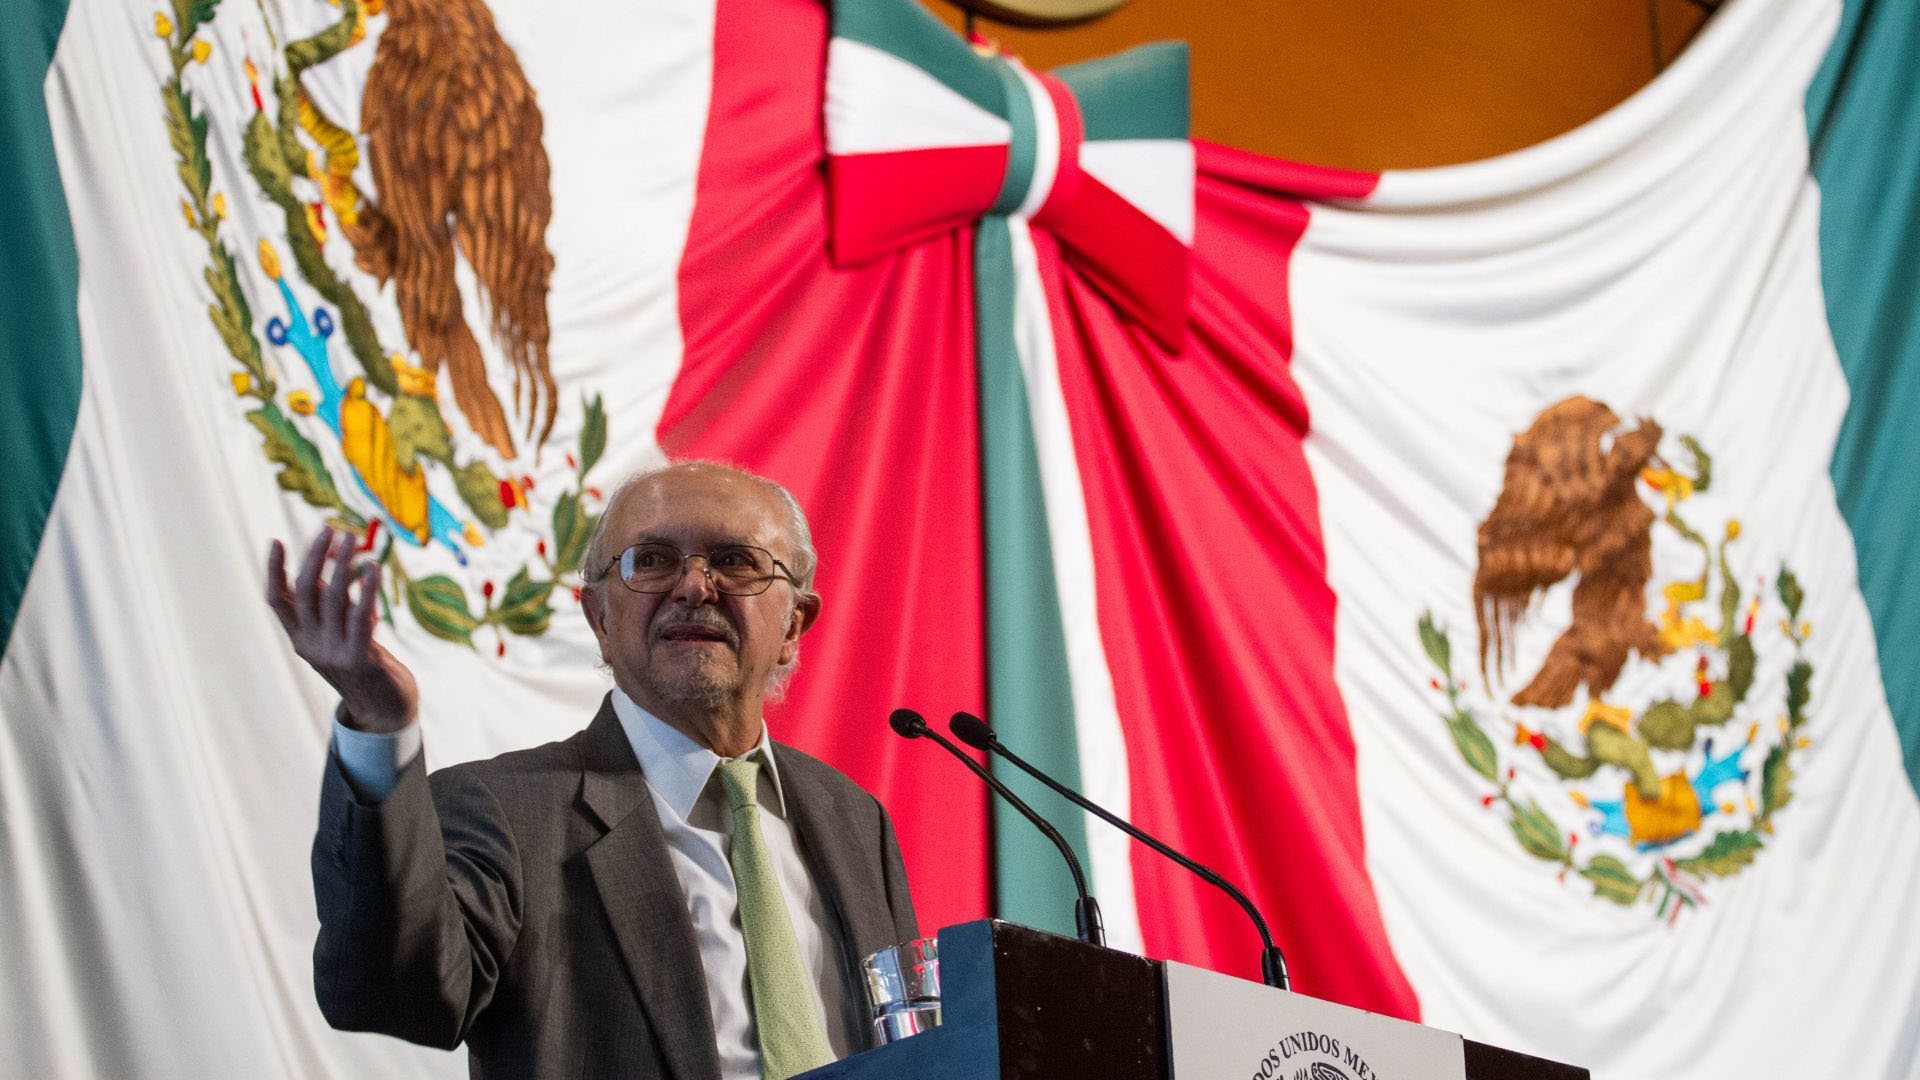 Mario Molina cuanta con la nacionalidad estadounidense desde hace más de 30 años (Foto: Cuartoscuro)